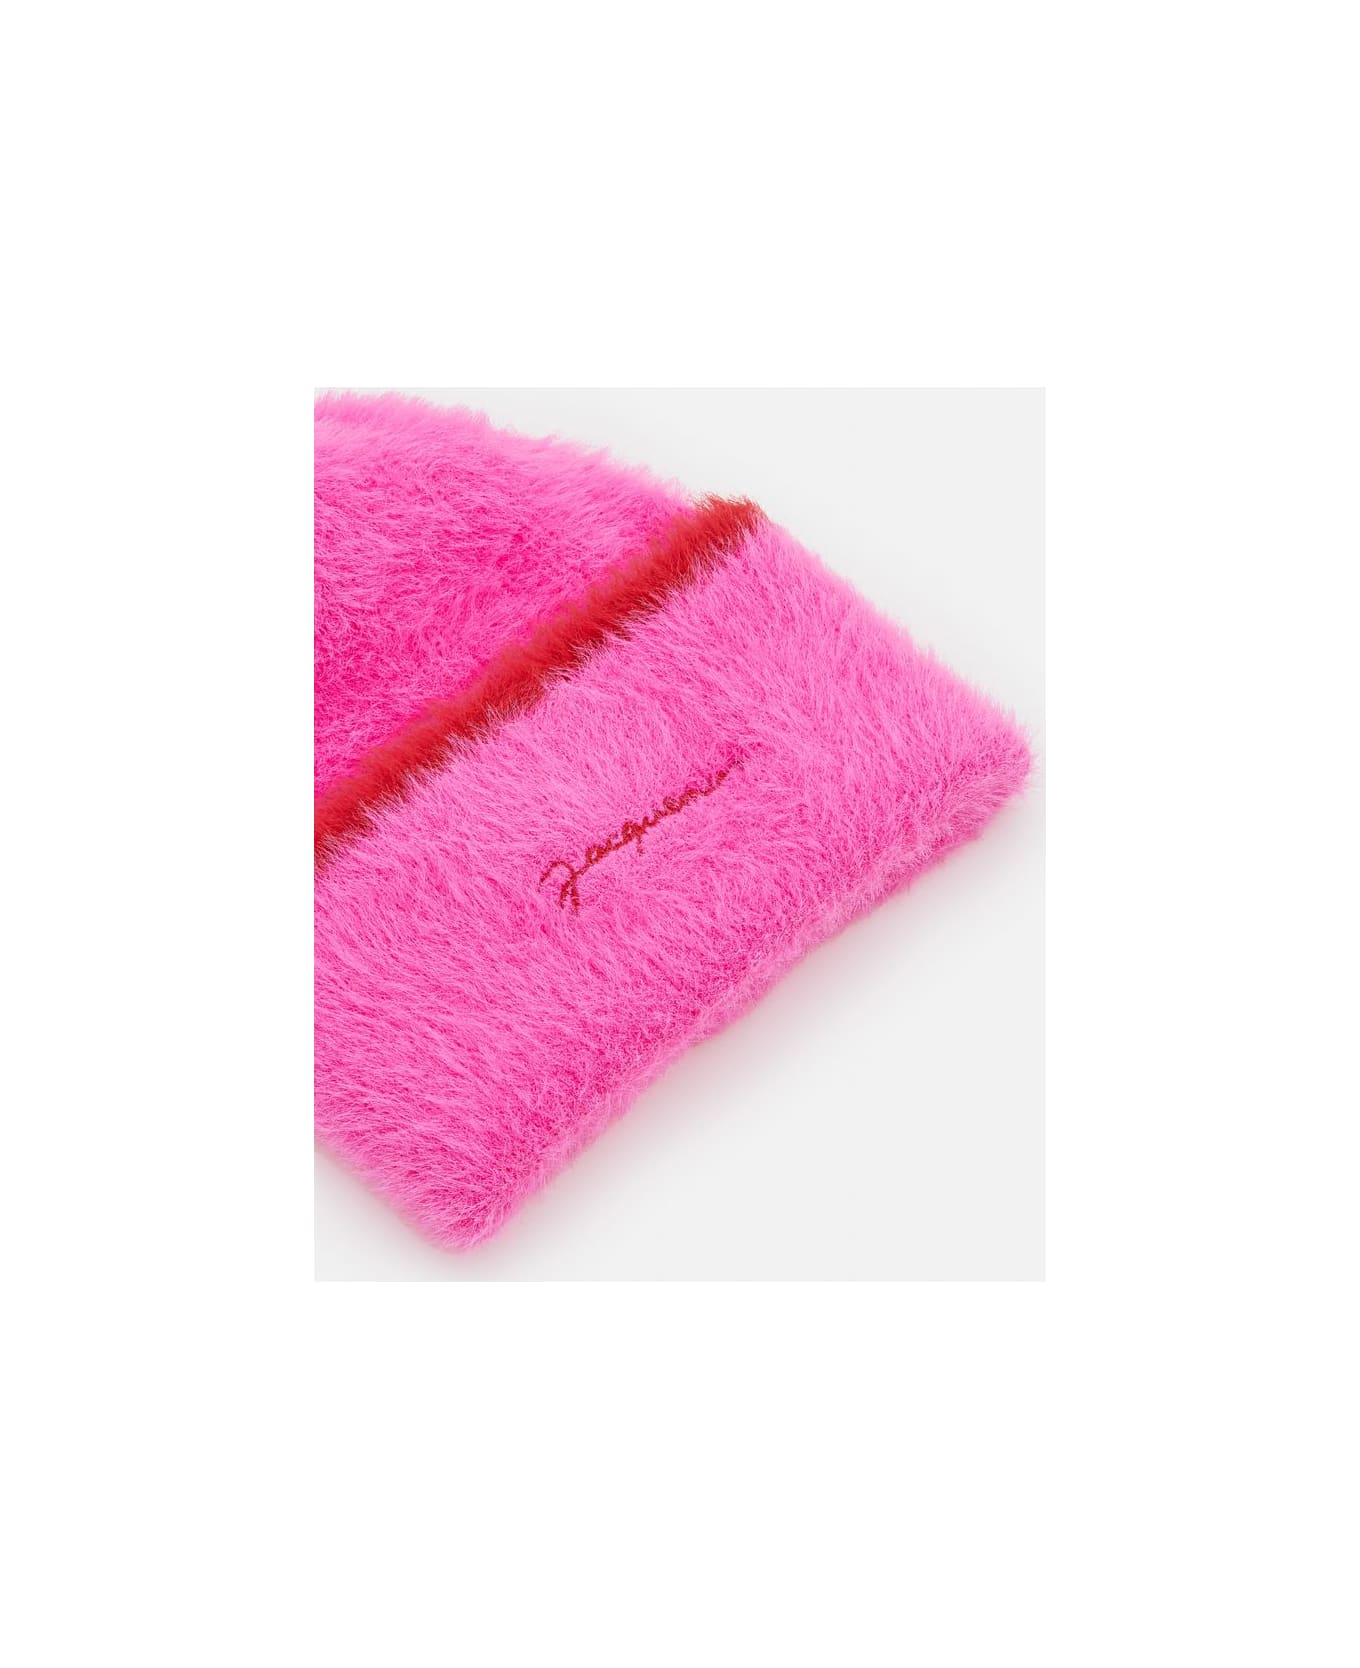 Jacquemus Le Bonnet Neve Beanie Hat - Pink ヘアアクセサリー